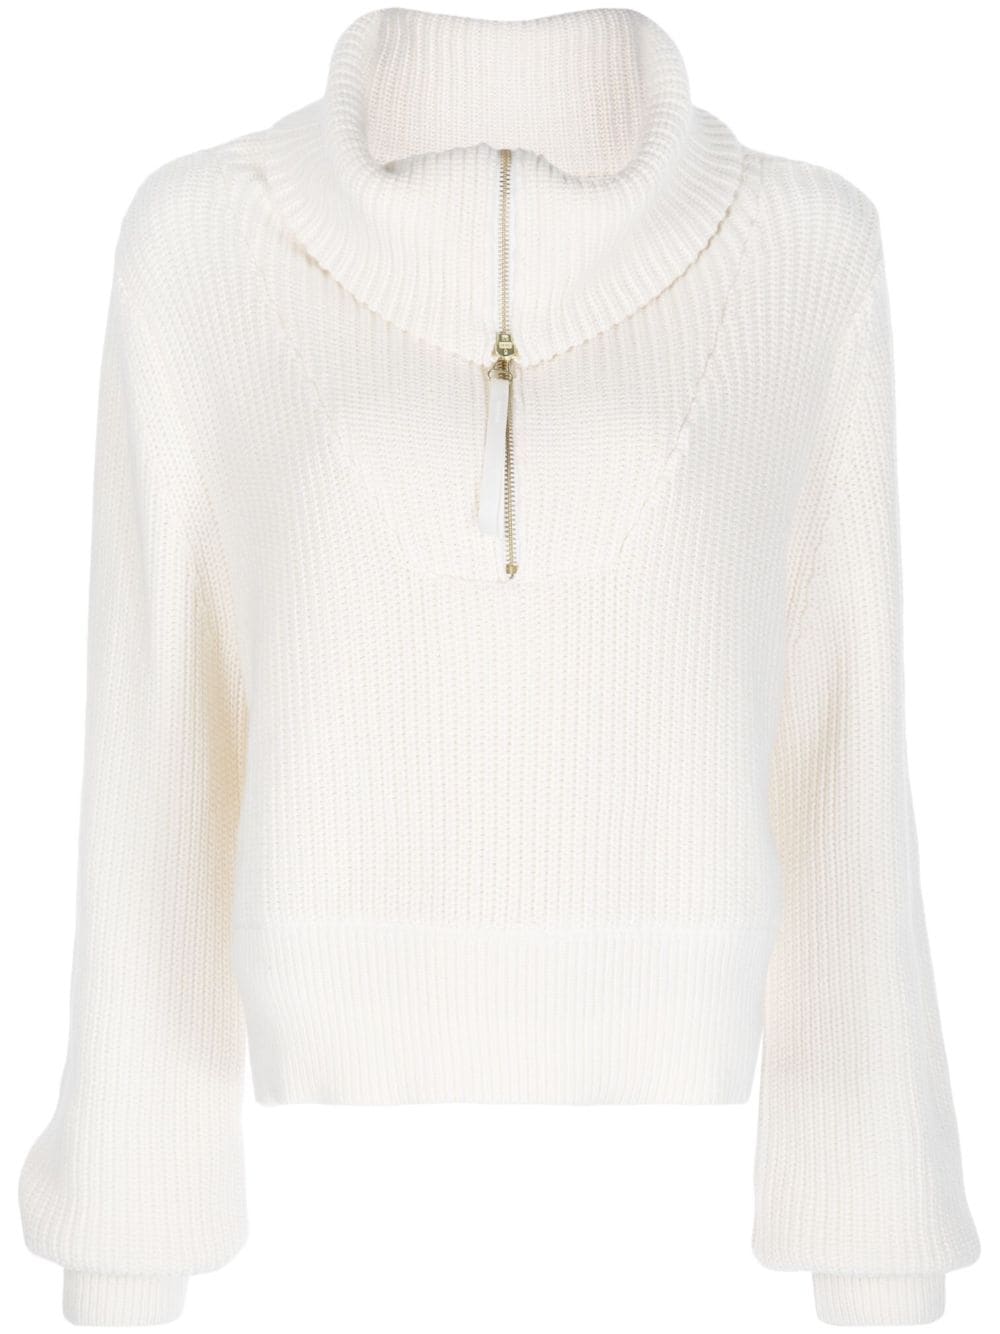 Varley "Mentone" half-zip knit jumper - White von Varley